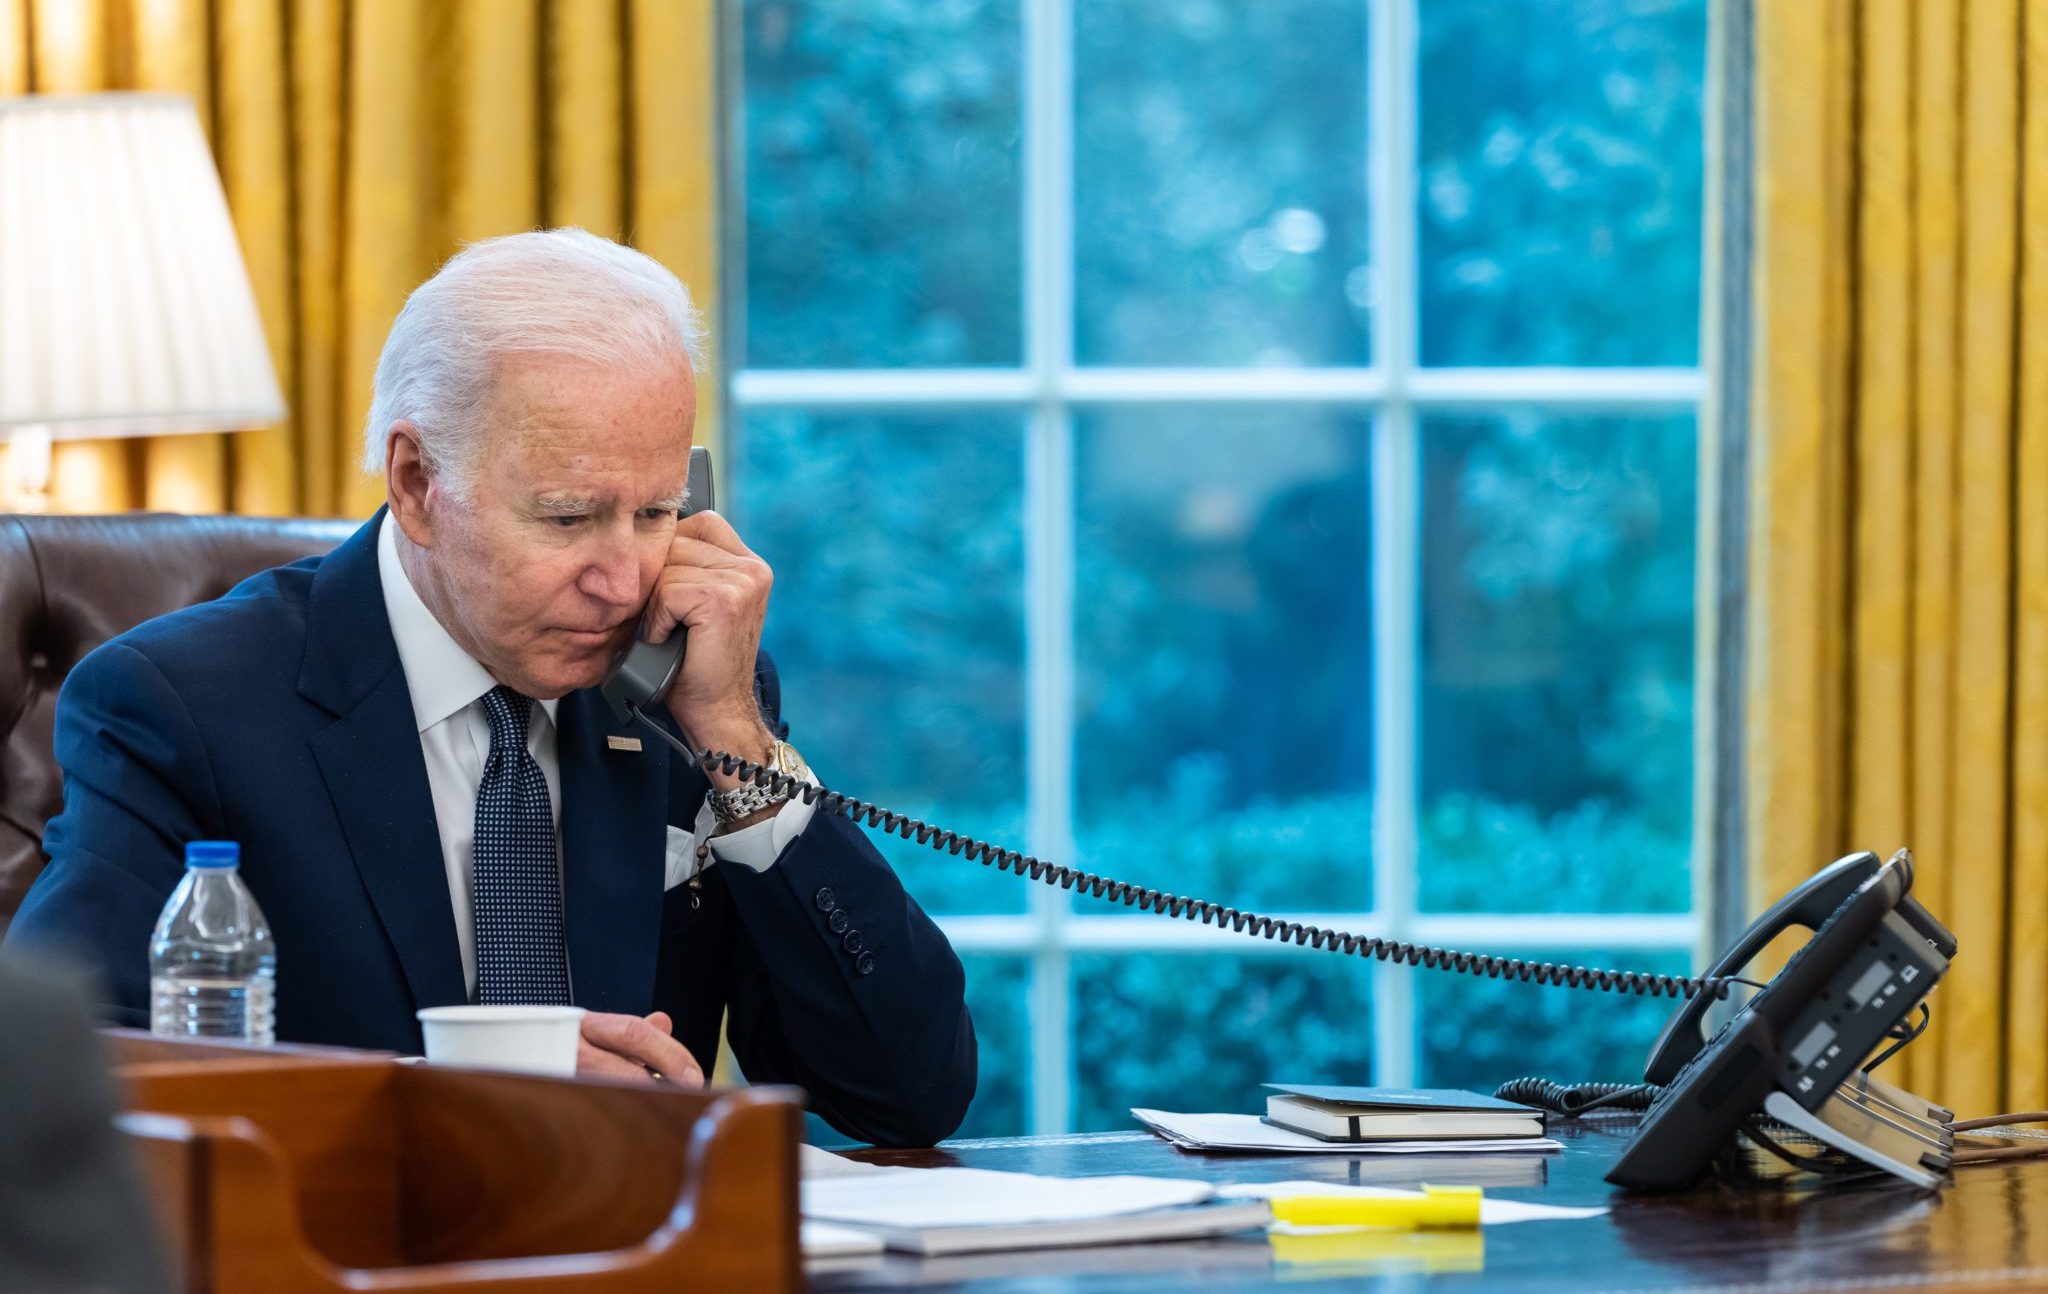 President_Biden_held_a_telephone_call_with_Ukrainian_President_Zelenskyy